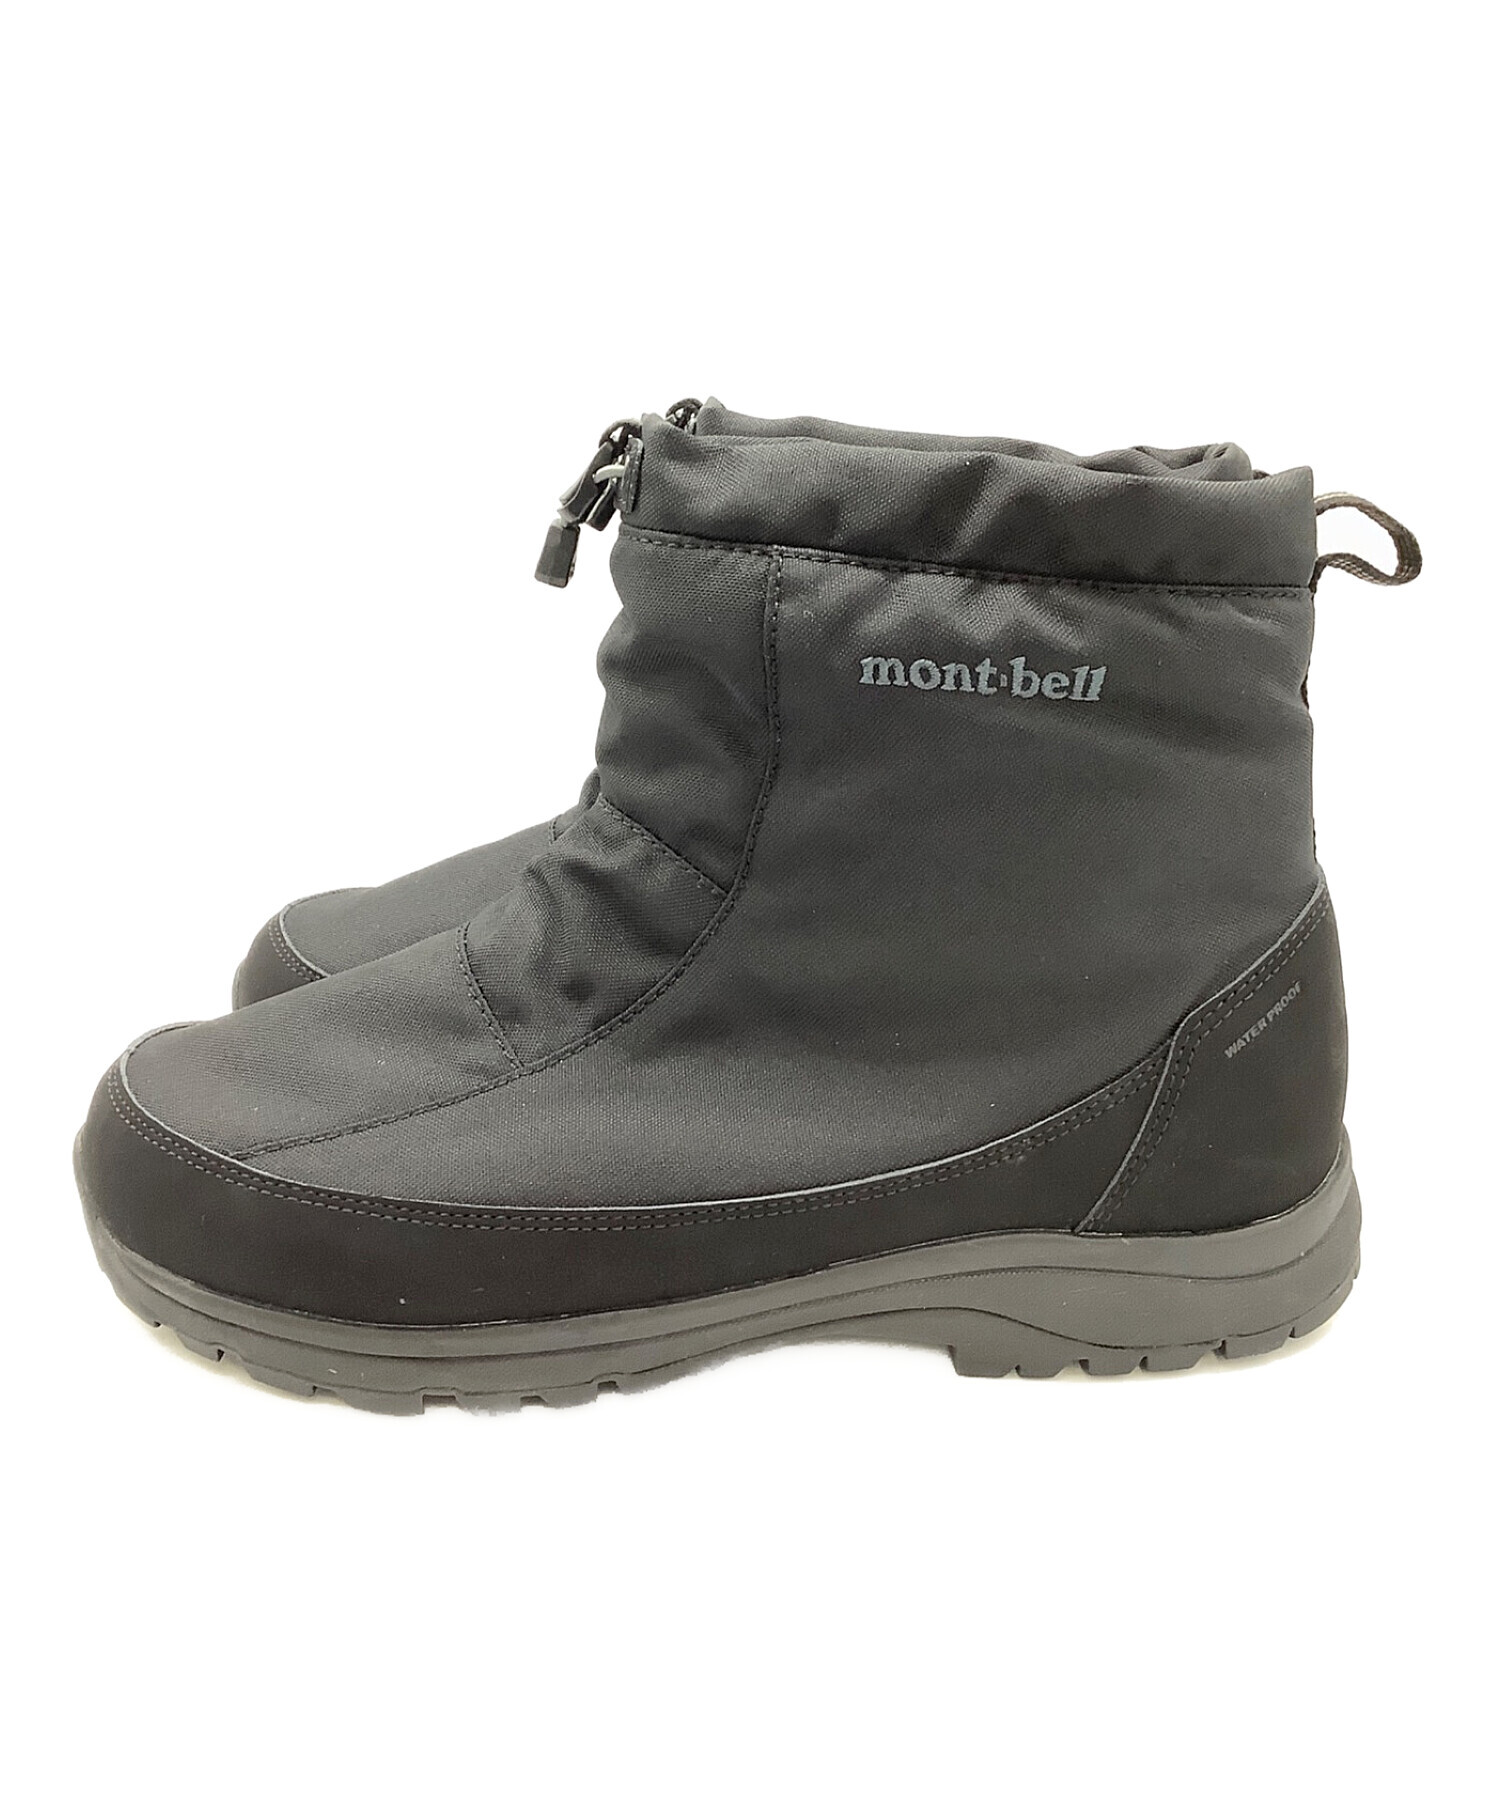 mont-bell (モンベル) コルチナブーツ ブラック サイズ:27